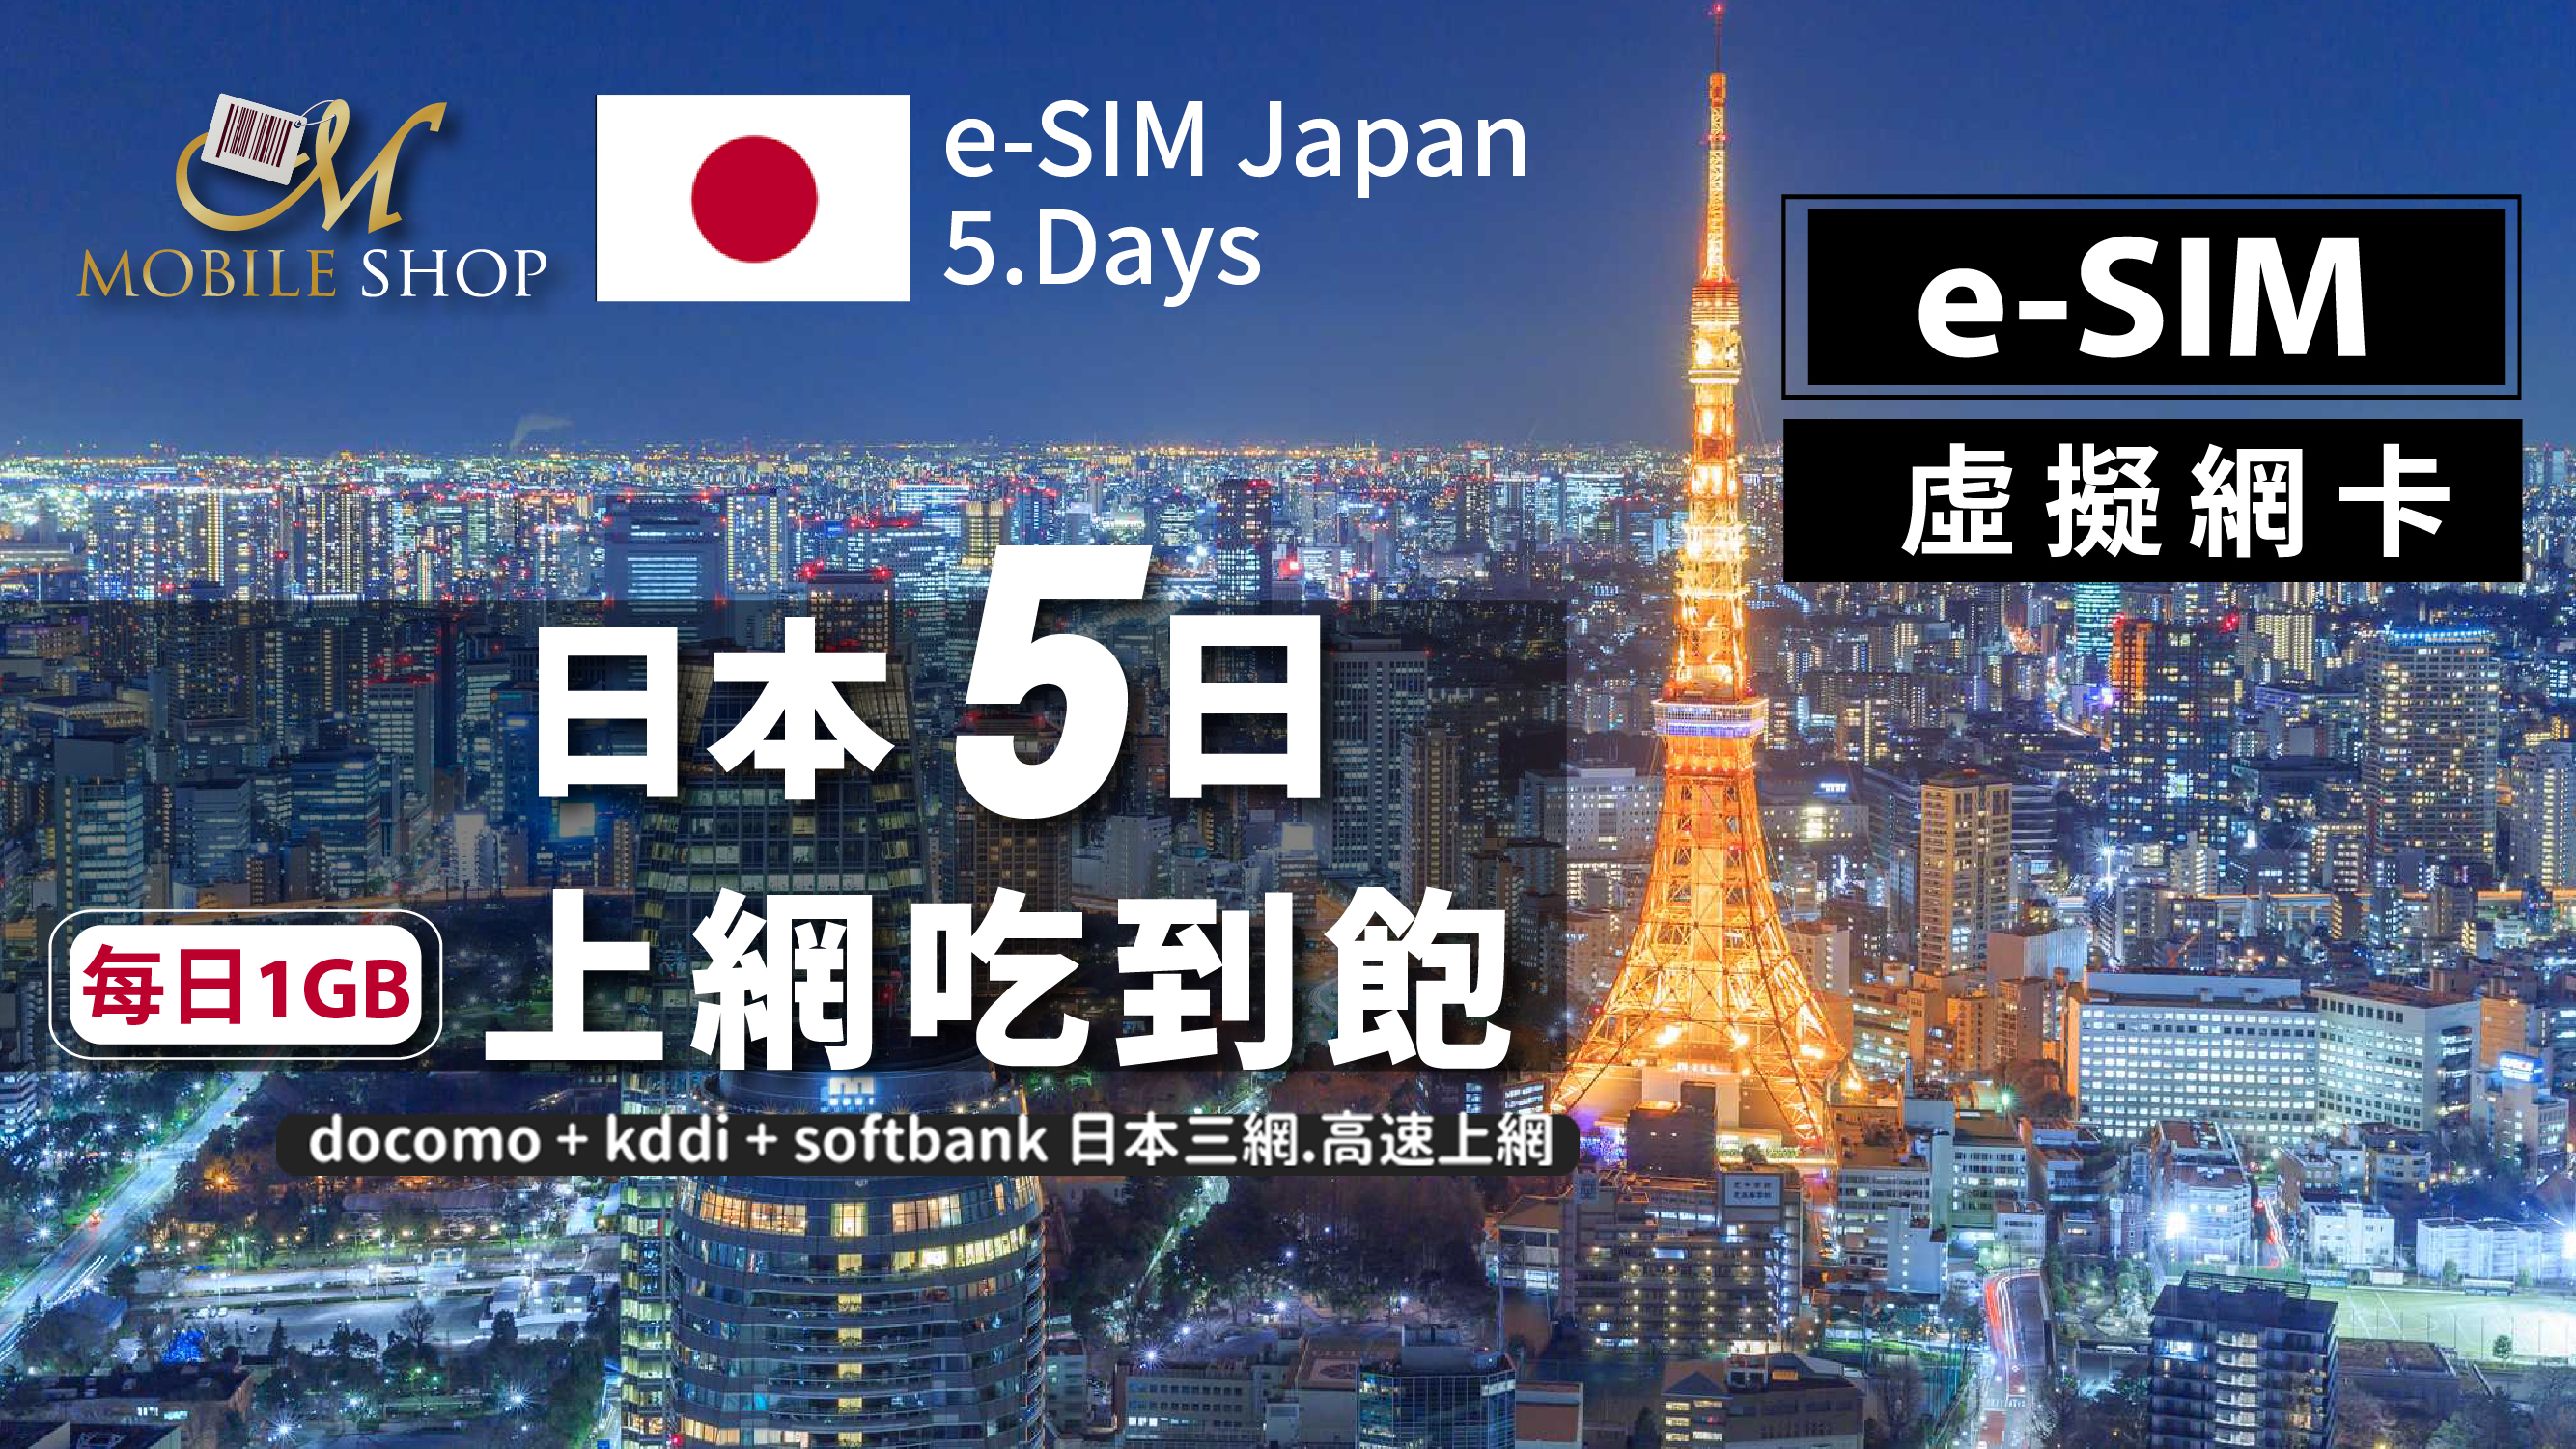 eSIM Japan 5days/1GB day unlimited data